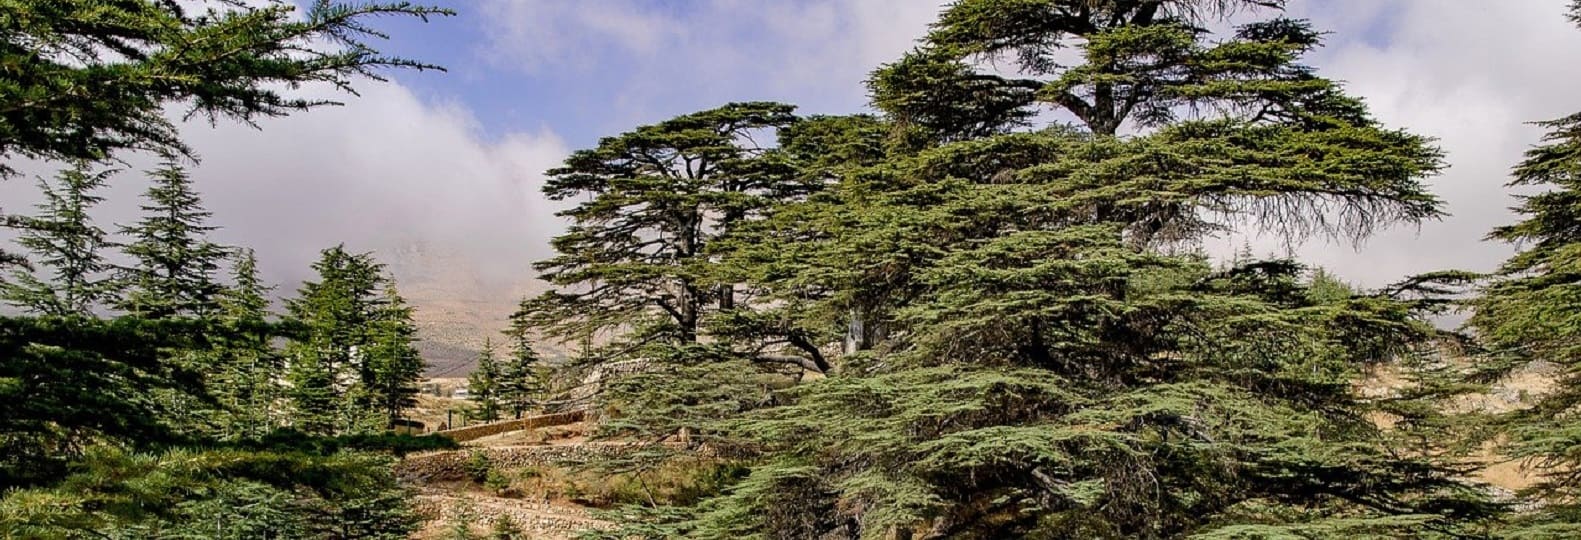 vallée des cedres du liban voyage culturel